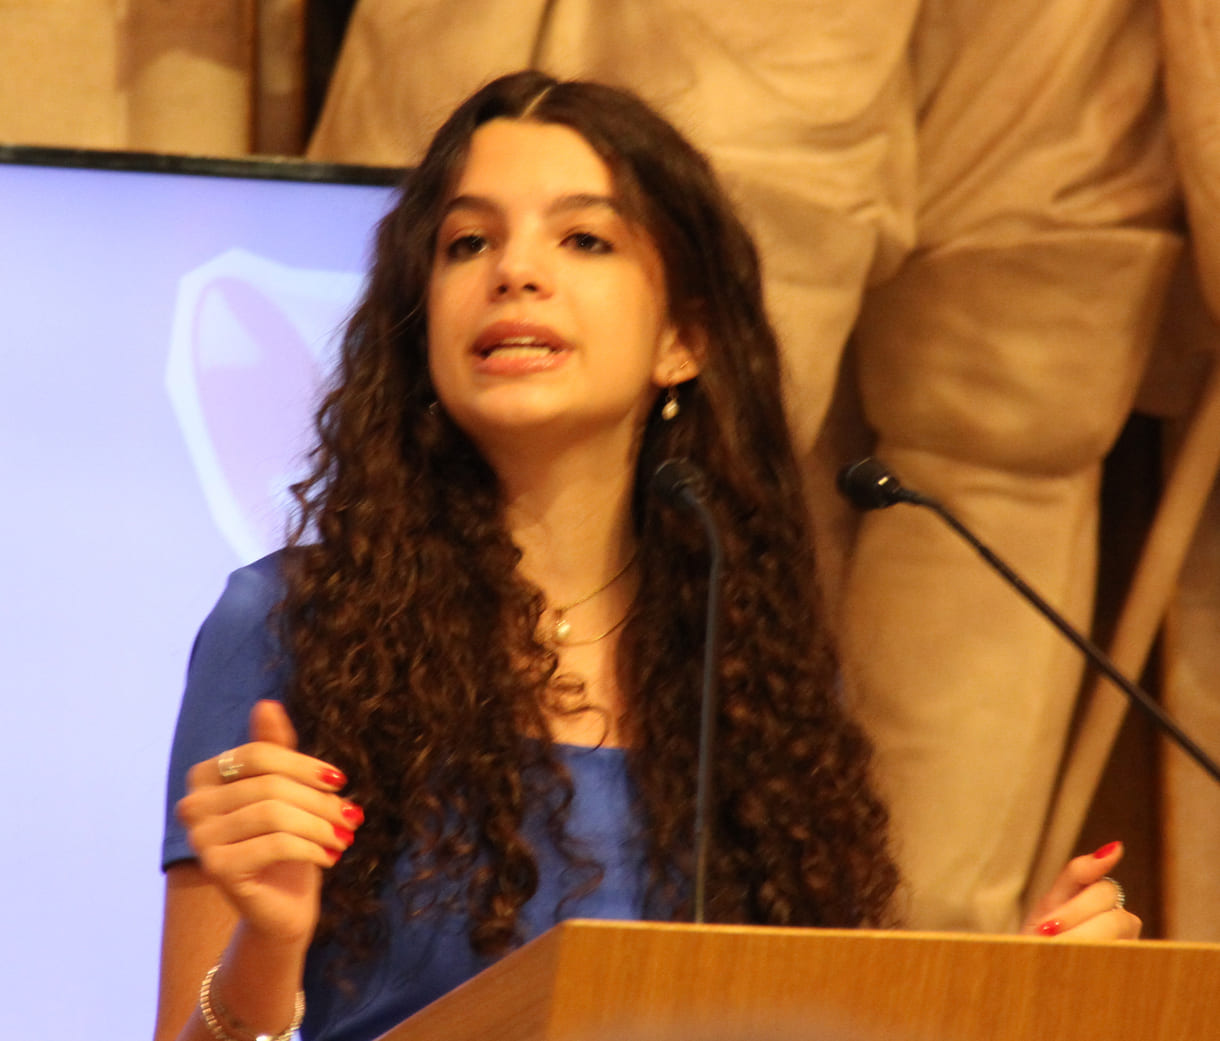 Ana Maria Haas da Silva bei ihrer Rede im Wiener Rathaus-Festsaal